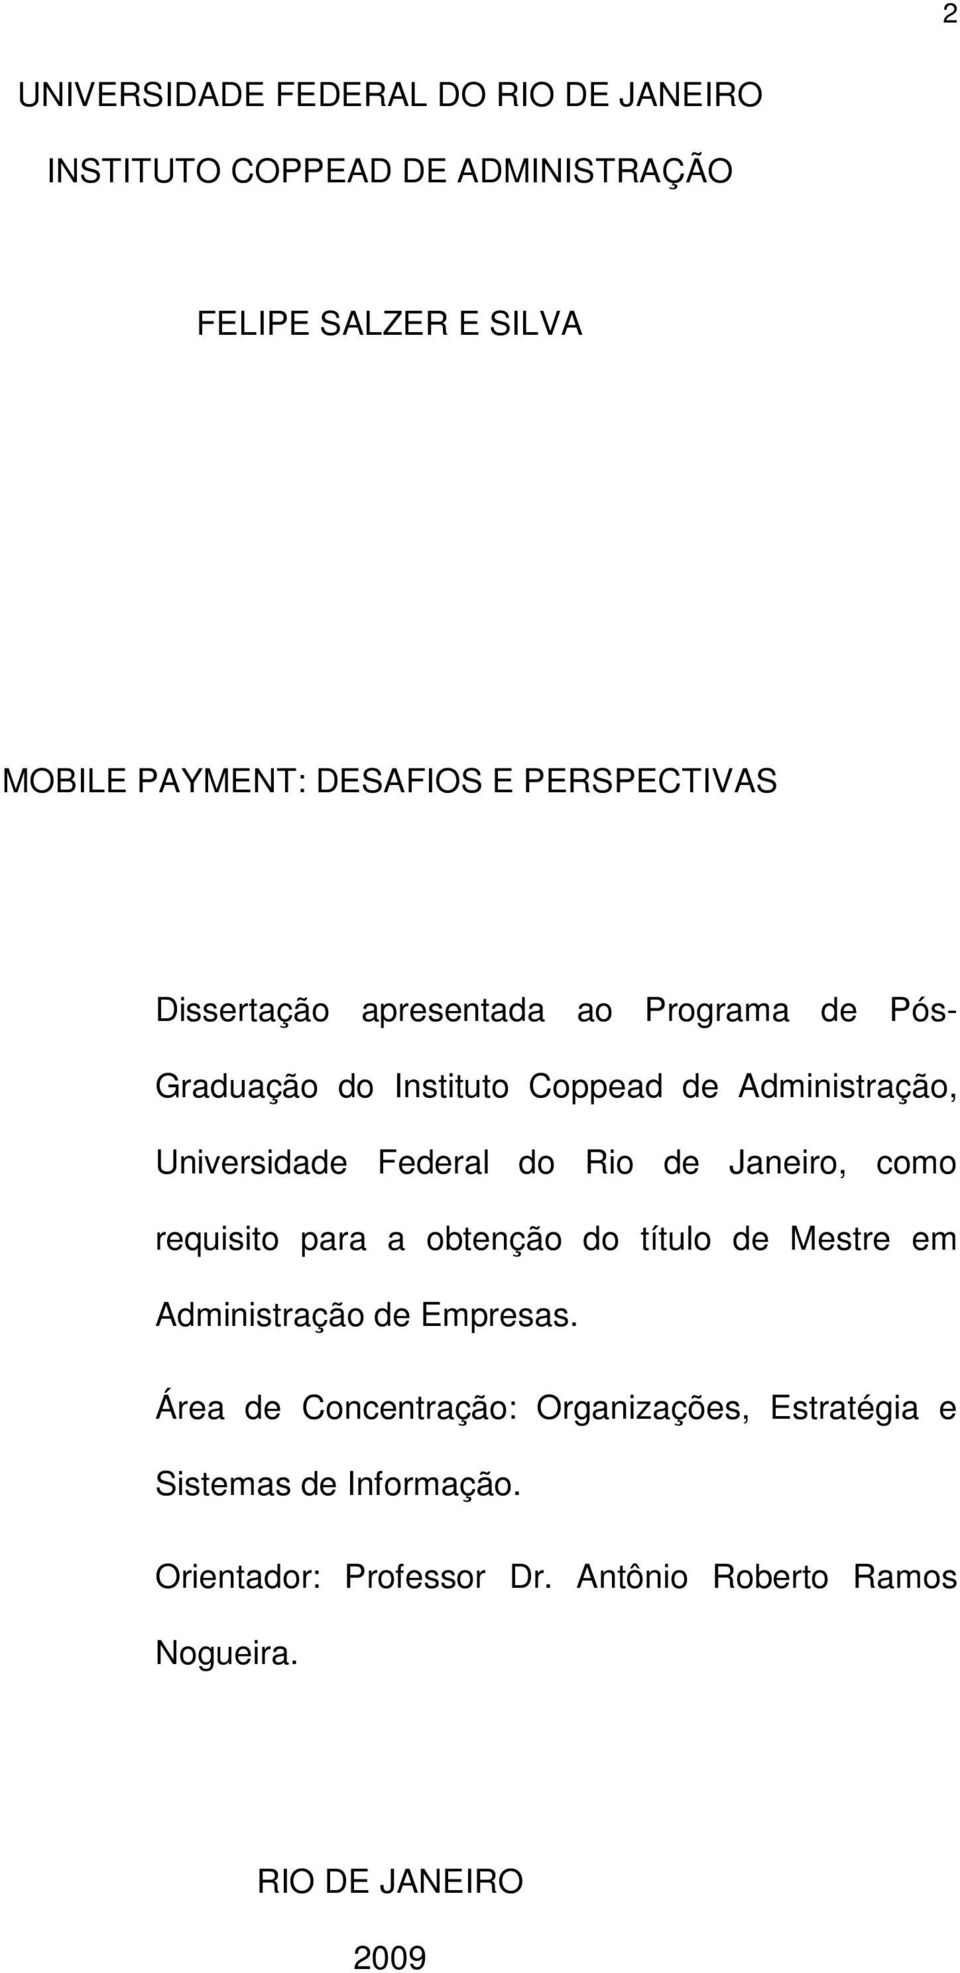 Federal do Rio de Janeiro, como requisito para a obtenção do título de Mestre em Administração de Empresas.